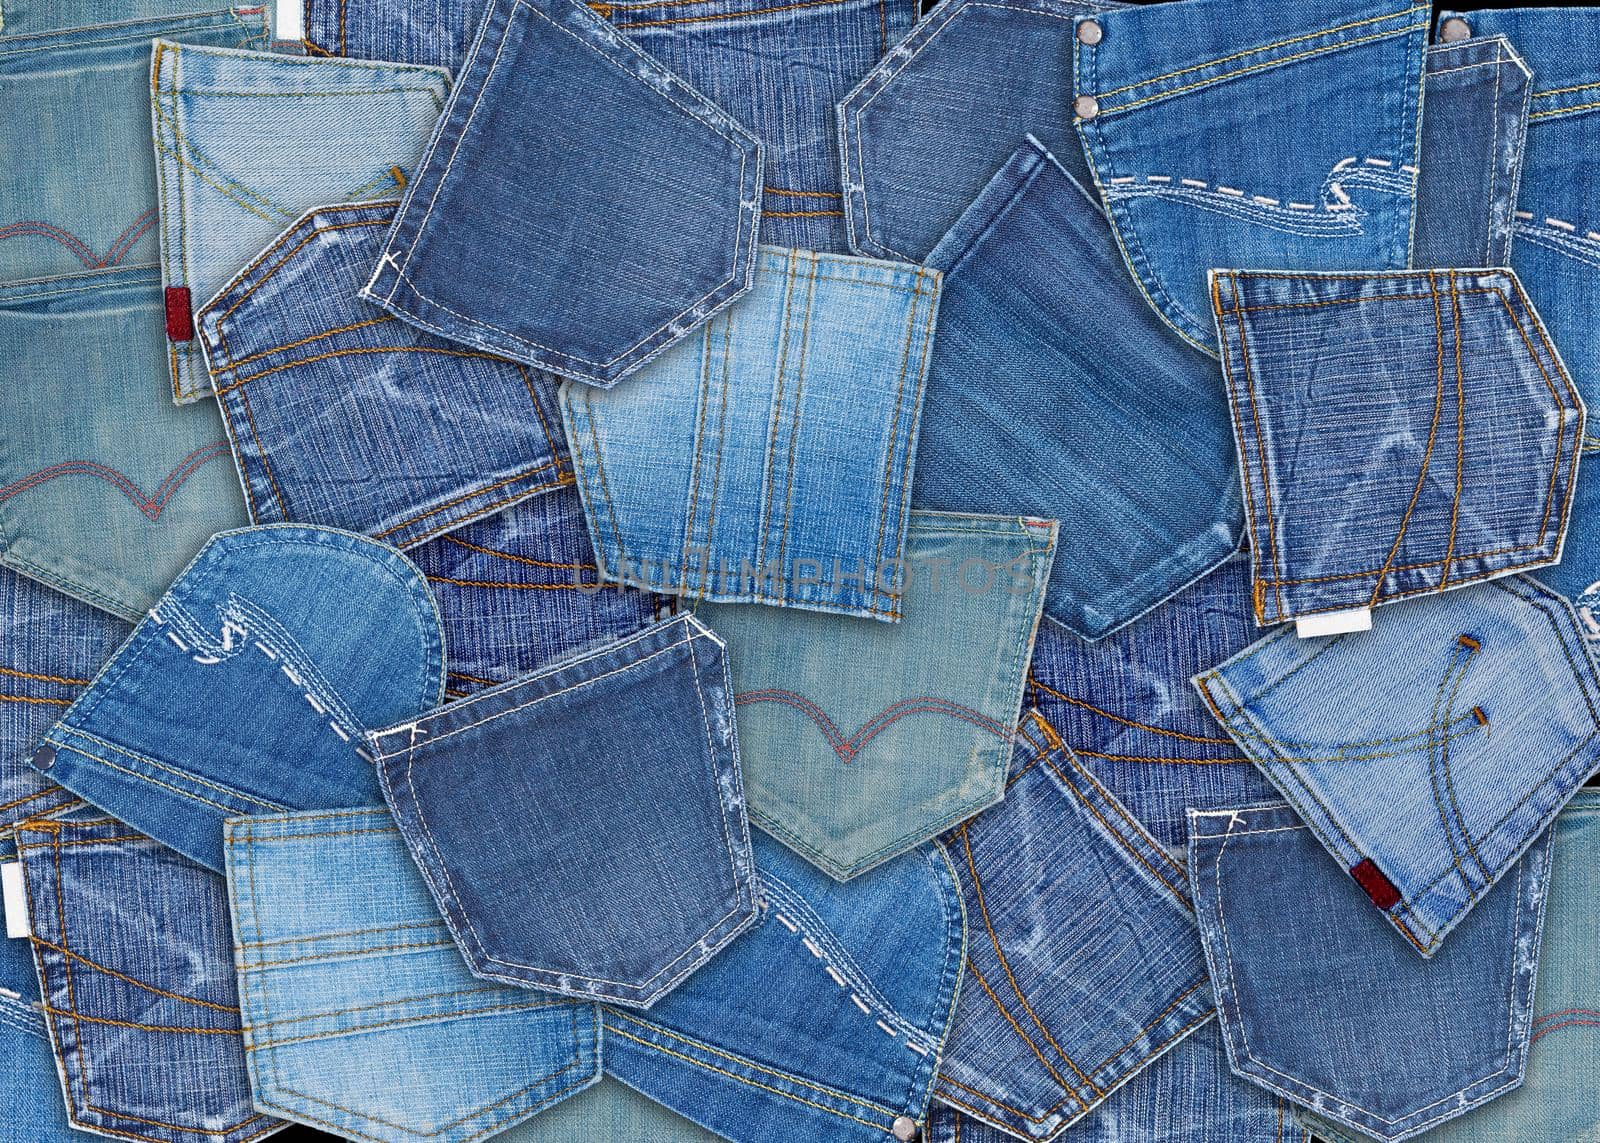  blue jeans pocket  by kornienko